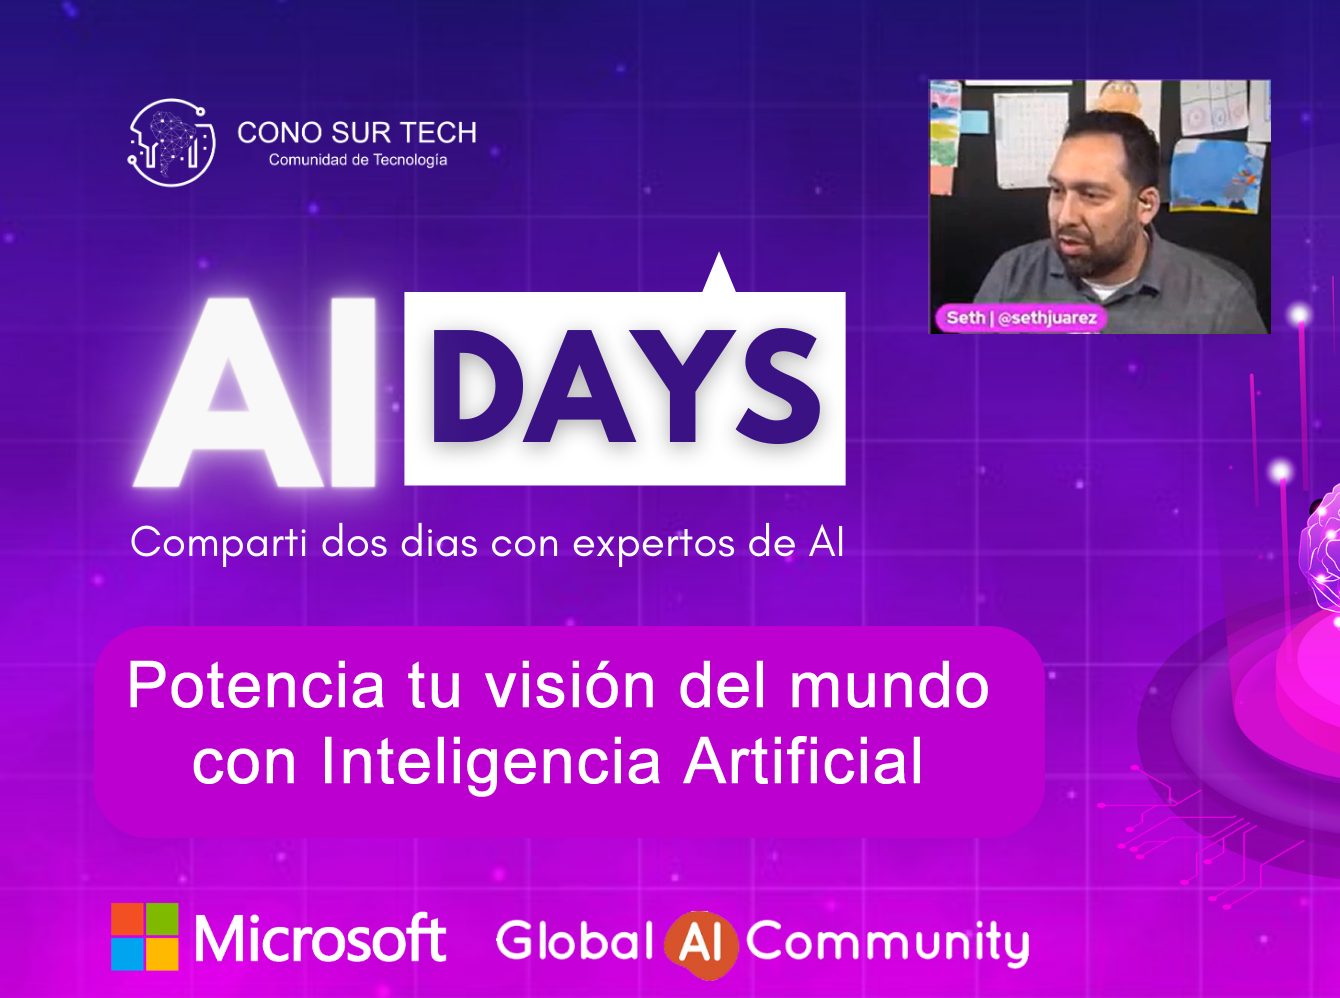 AI Days 2021 - Seth Juarez